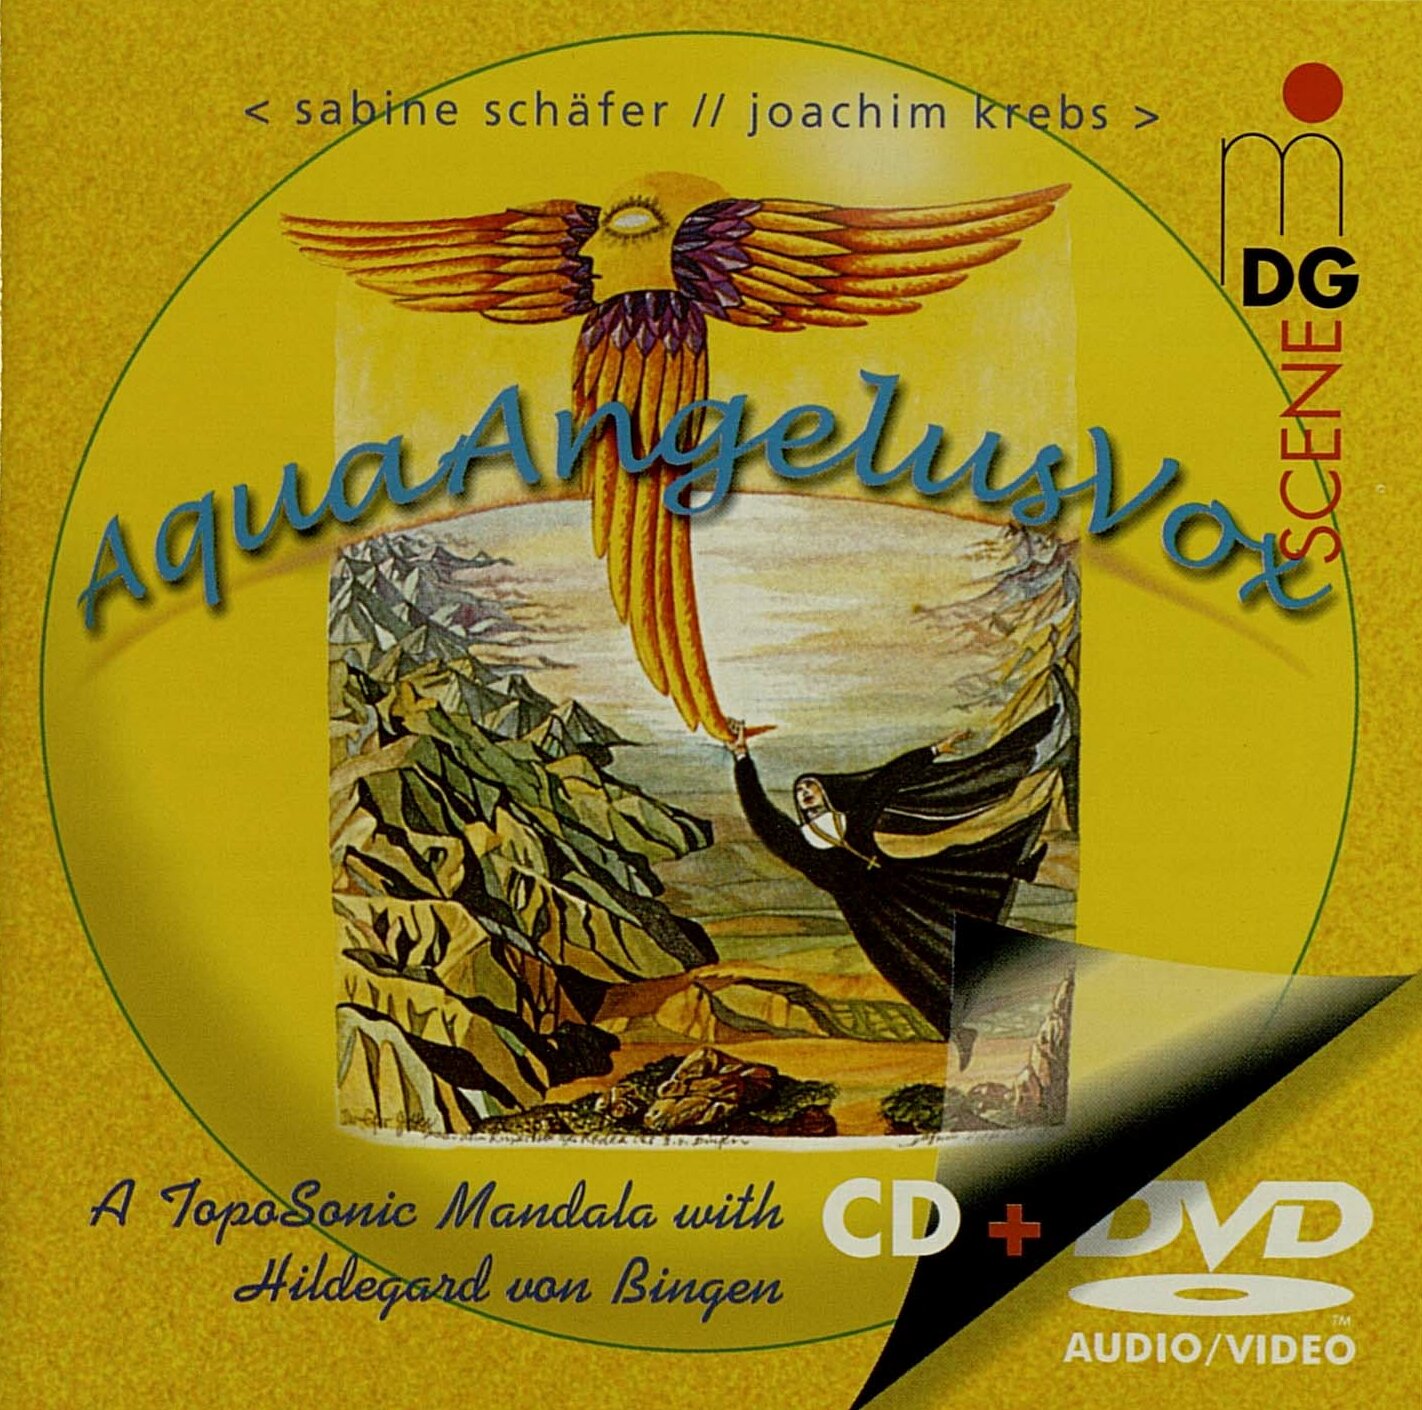 AquaAngelusVox, CD/DVD Cover mit einer Collage.